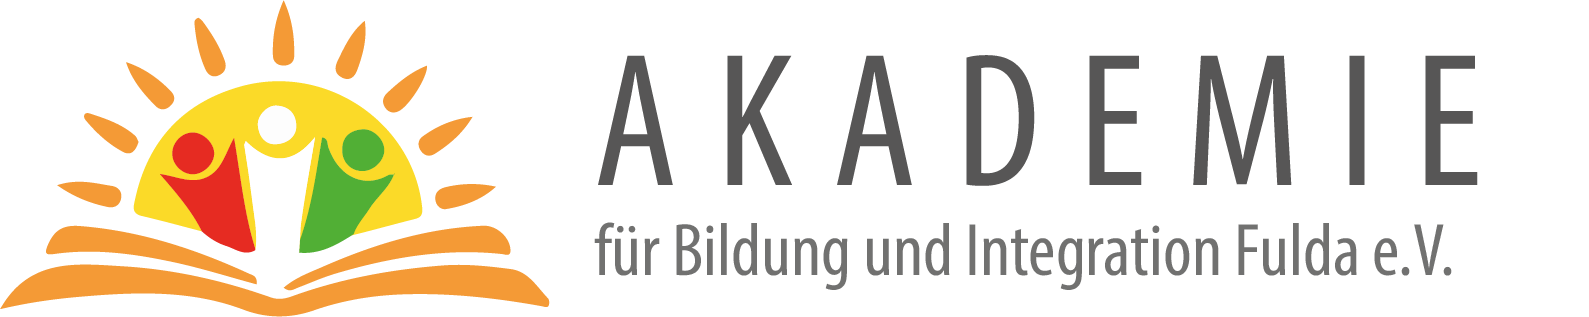 ABI - Akademie für Bildung und Integration Fulda e.V.